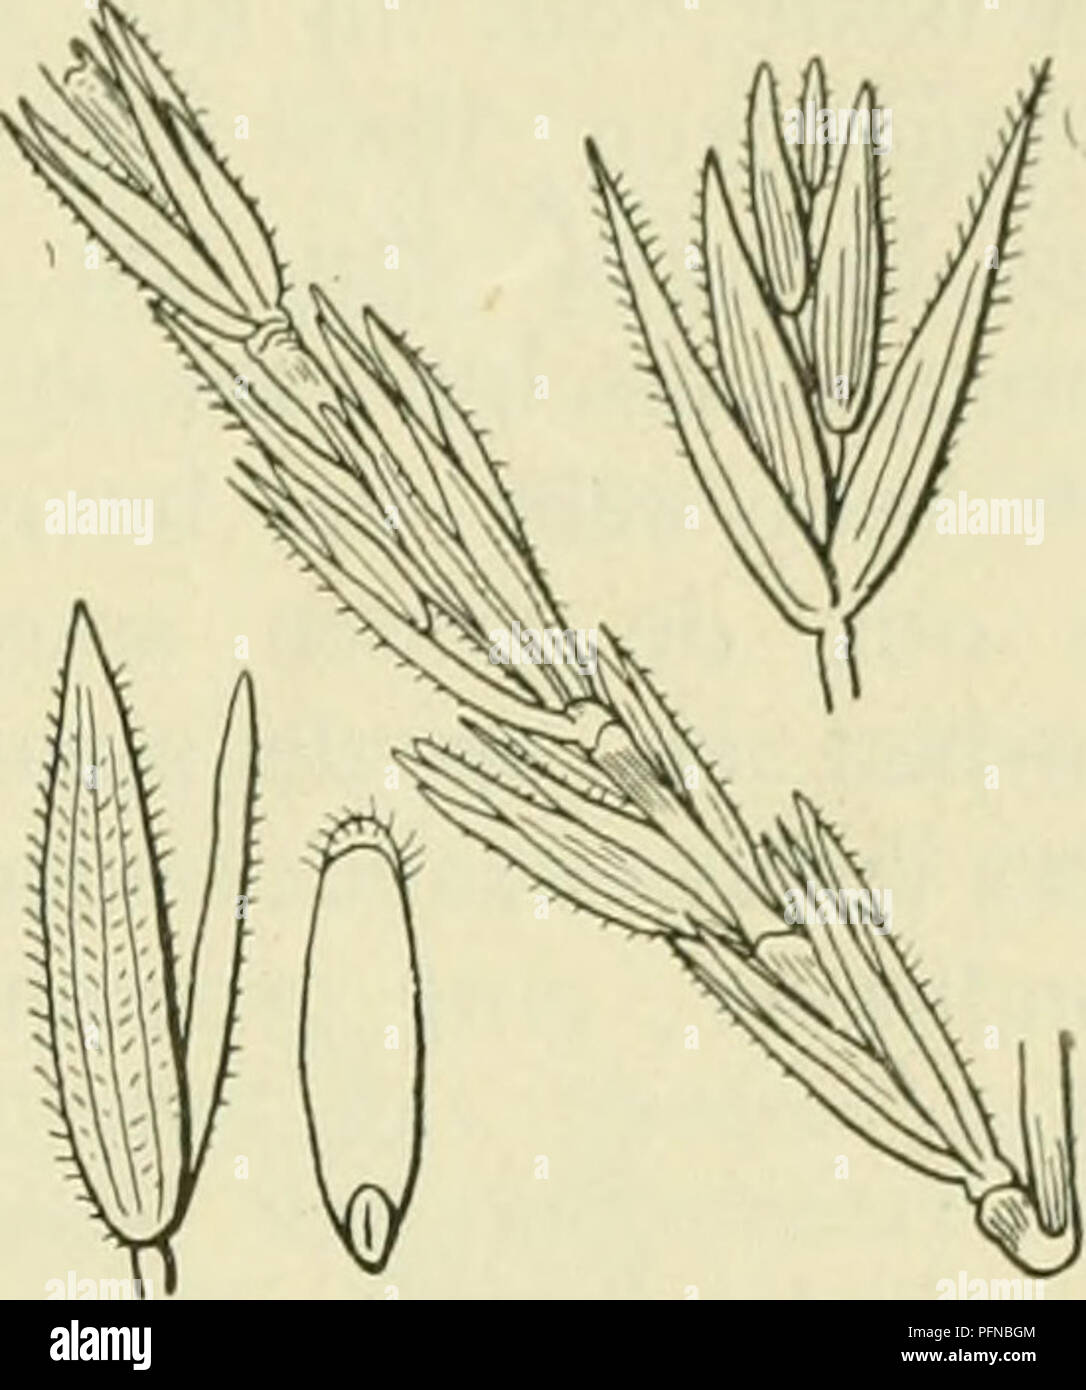 . De flora van Nederland. Plants. FAMILIK 18. GRAMINAE. — 55» lan^'c (aan de iiiiiklenaailjcs meest niet zoo landje) naald, op de nerven zeer ruw. '^. 6-12 dM. Jnli, Augustus, soms reeds in Juni. Deze soort jj;eliji&lt;t veel op Triticiim caniniim, doch no;; meer op Uraciiypodium silvaticiim, ooi&lt; vertoonen de bladen vaak de nitstckende, witte middennerf. De vorm der aar is echter een duidelijk ondersciieidend kenmerk. Voorkomen in Europa en in Nederland. De plant komt in bijna kcIil'cI liincjpa in bos- schen voor. Zij is bij ons bij Bolsward },'evonden.. Elymus arenarius Fig. 501. 45. Elym Stock Photo